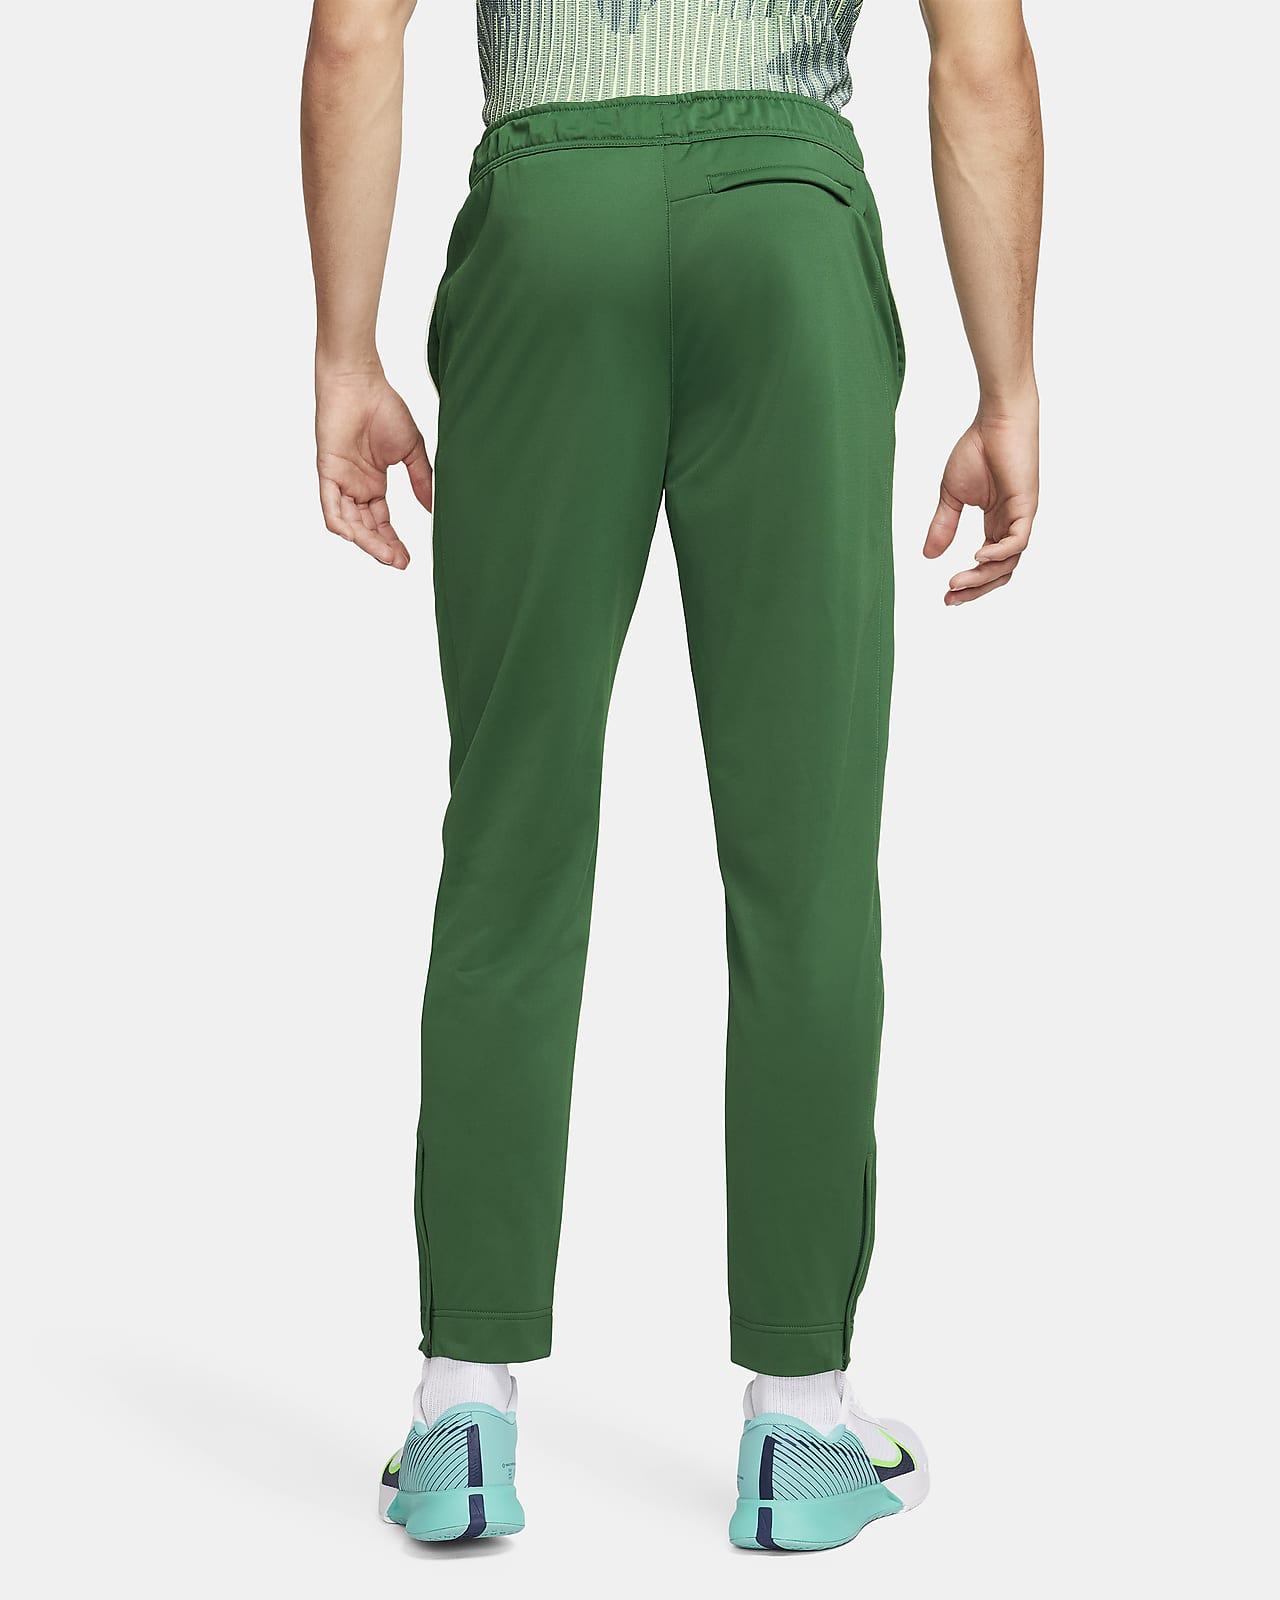 Shop NikeCourt Men's Tennis Trousers